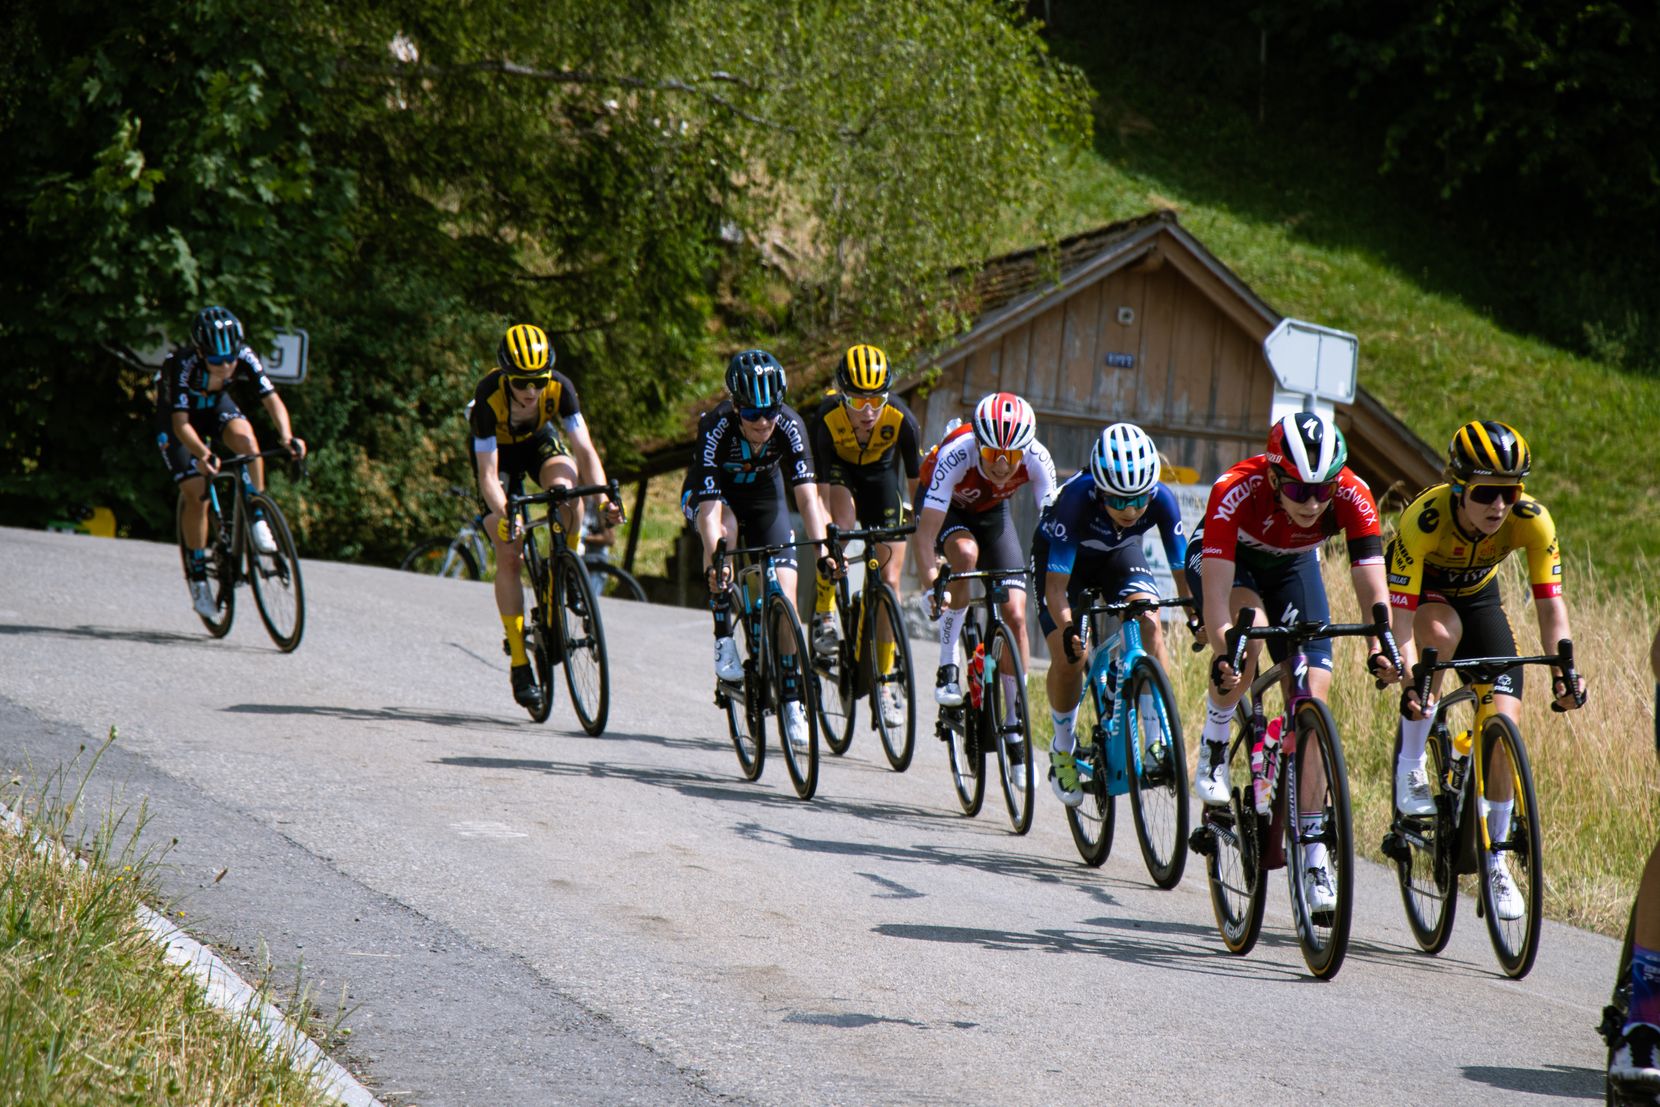 Eindrücke der Tour de Suisse der Frauen. Das rad-rennen vom 19.06.23 durch das Fischenthal.